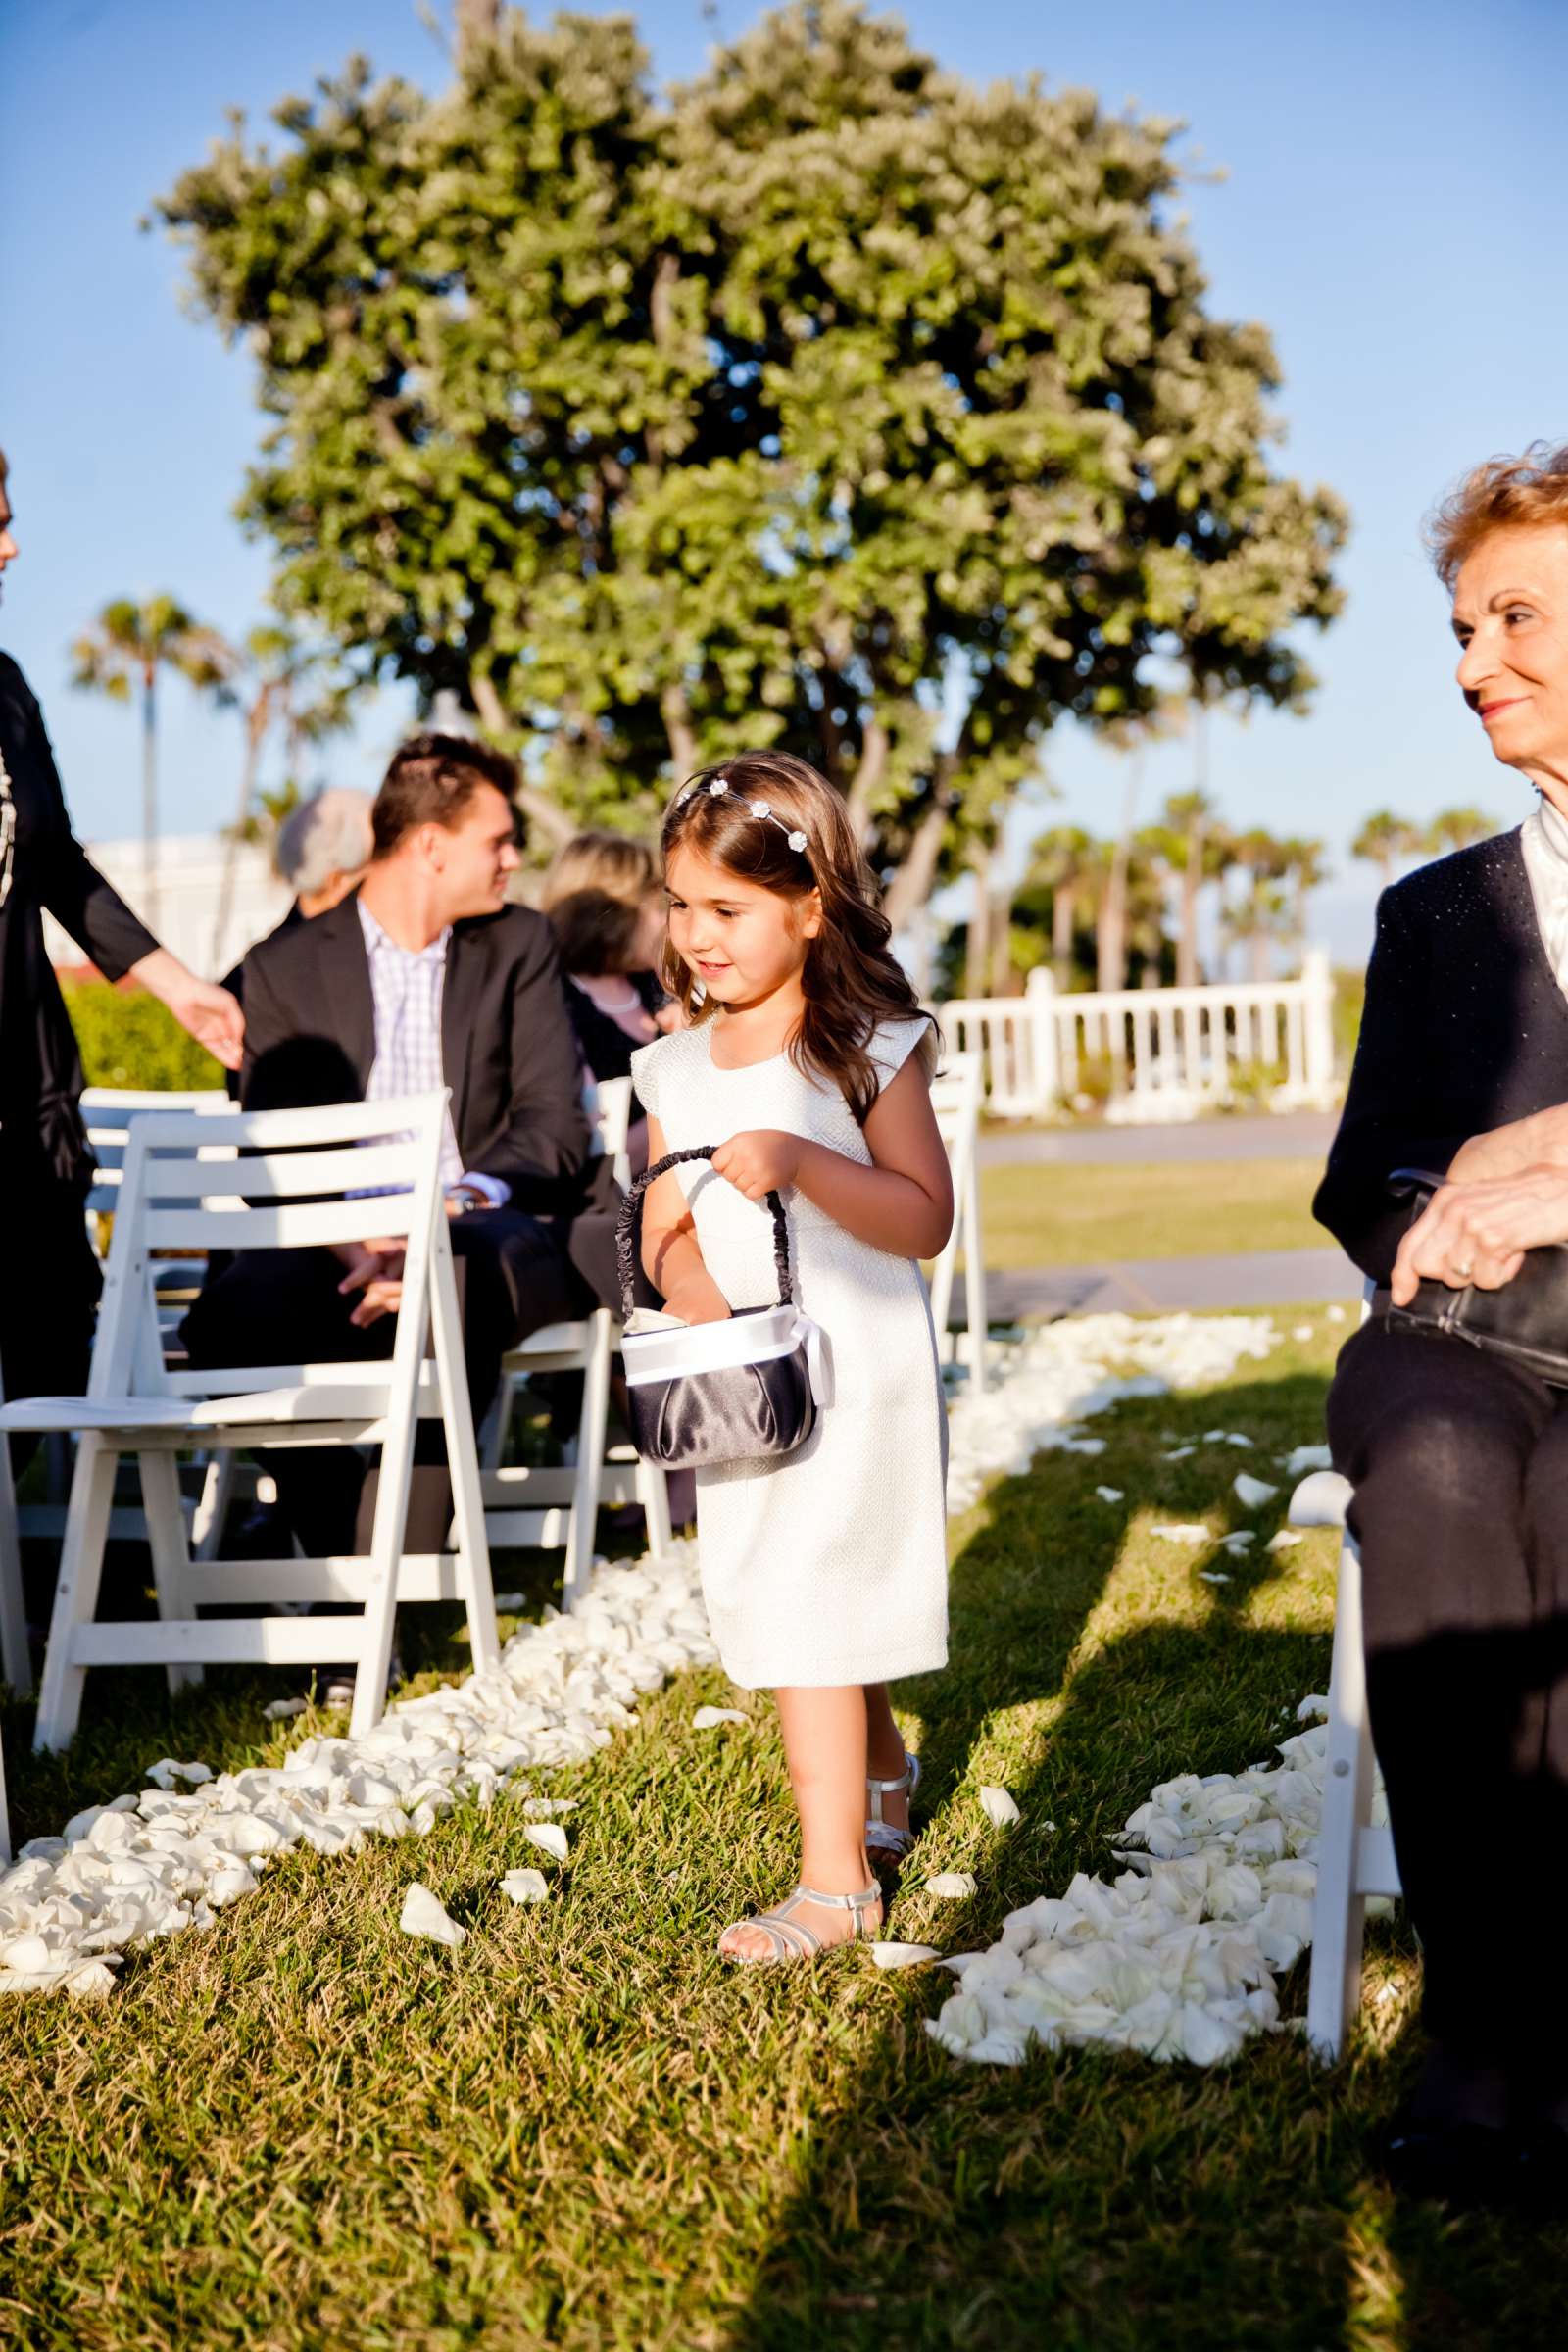 Hotel Del Coronado Wedding, Melis and Marc Wedding Photo #21 by True Photography